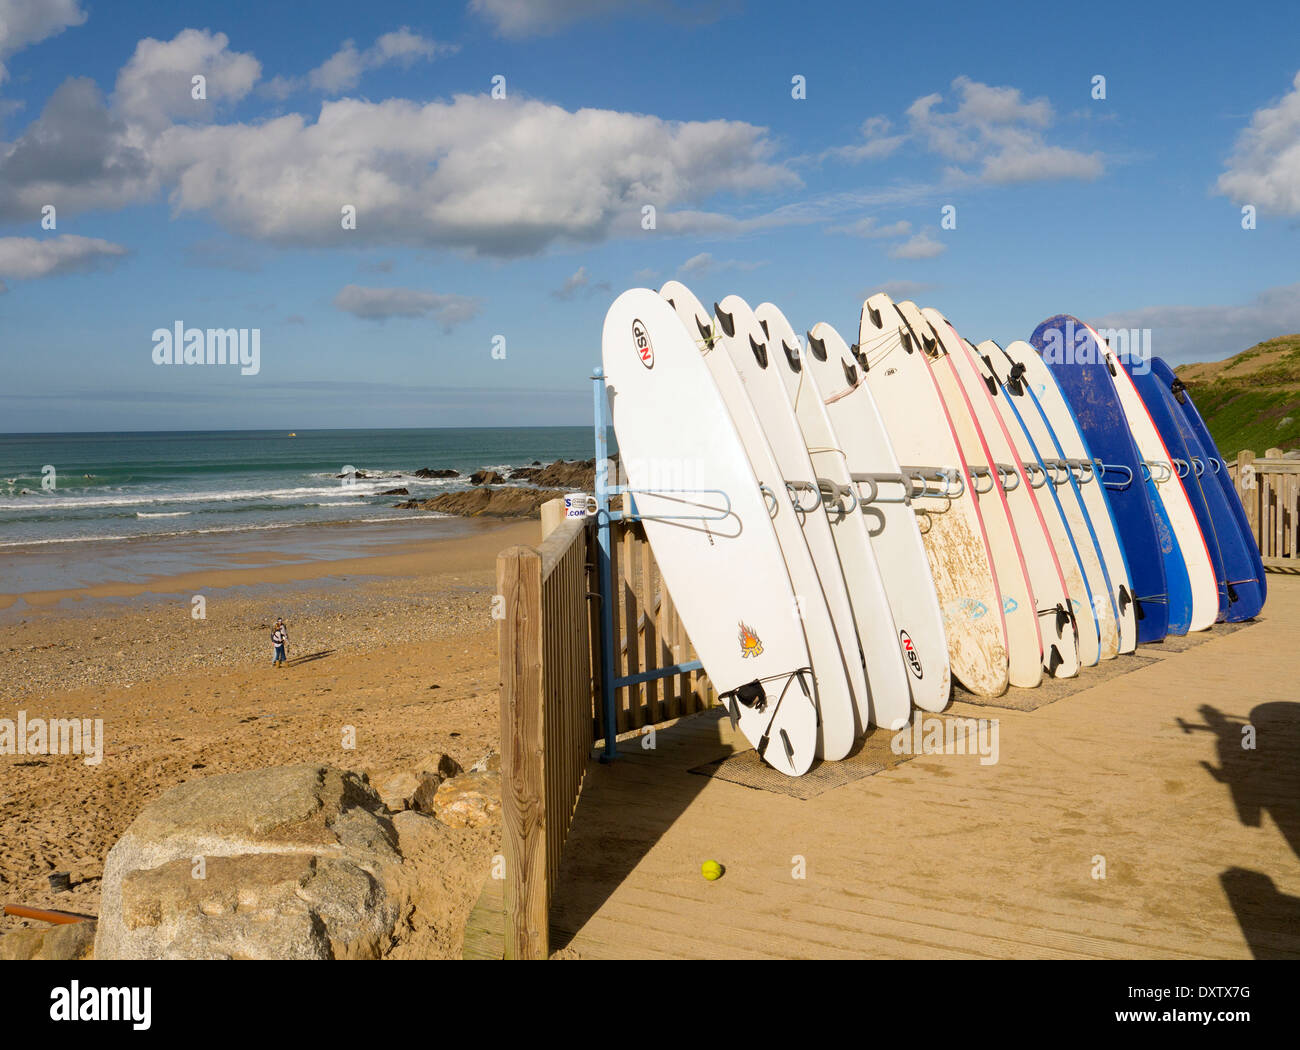 La playa Fistral Newquay Cornwall fila de tablas de surf para alquilar. Foto de stock